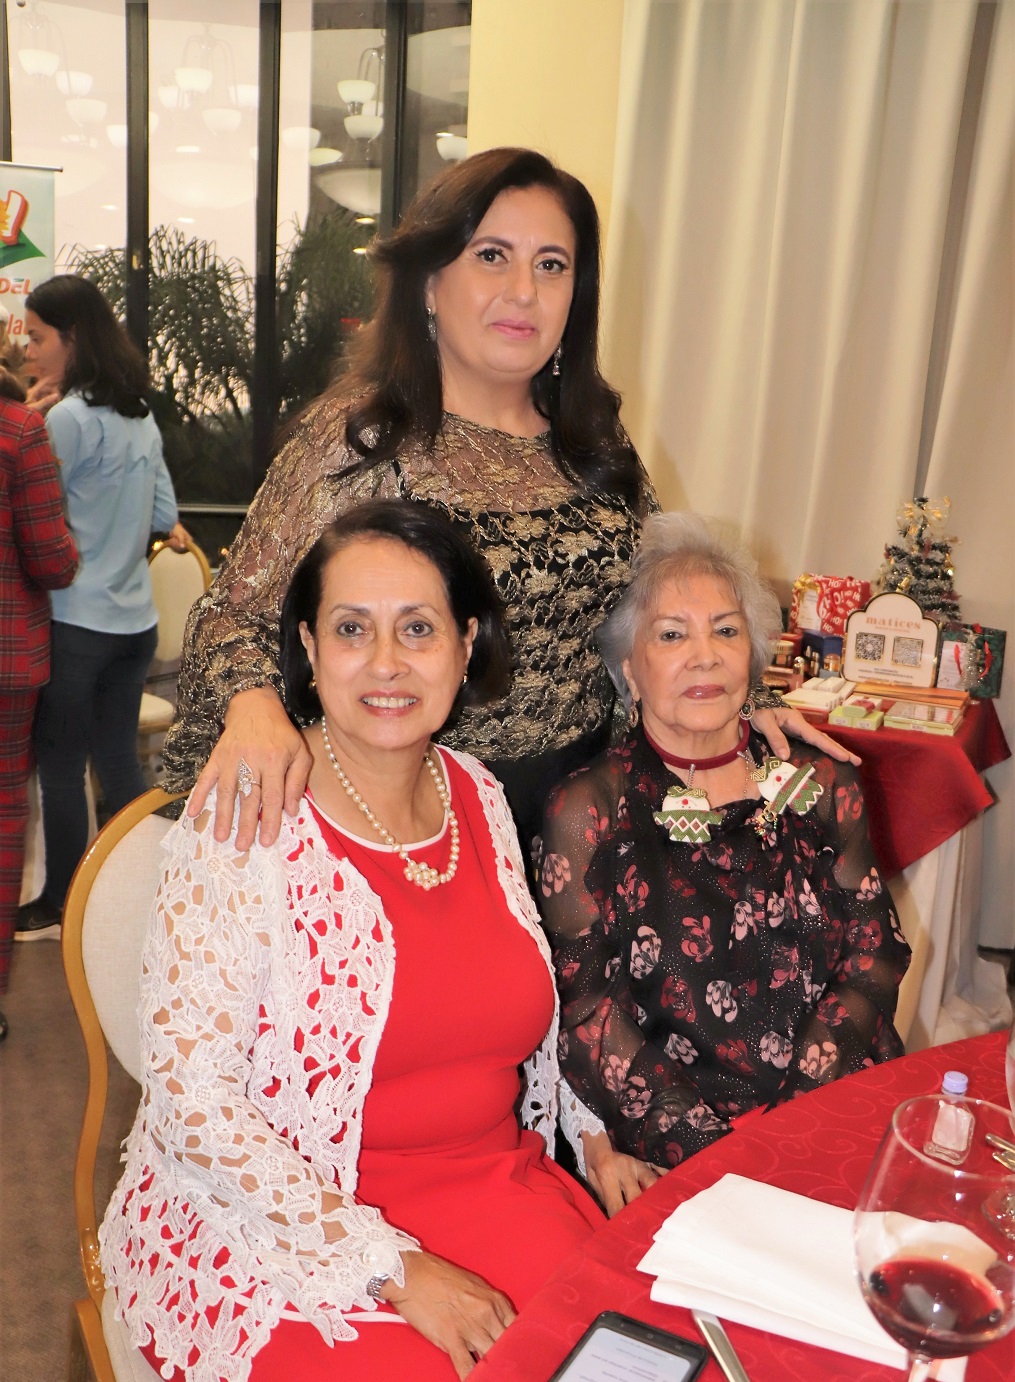 Alegre convivio navideño de socias del Club Internacional de Mujeres 